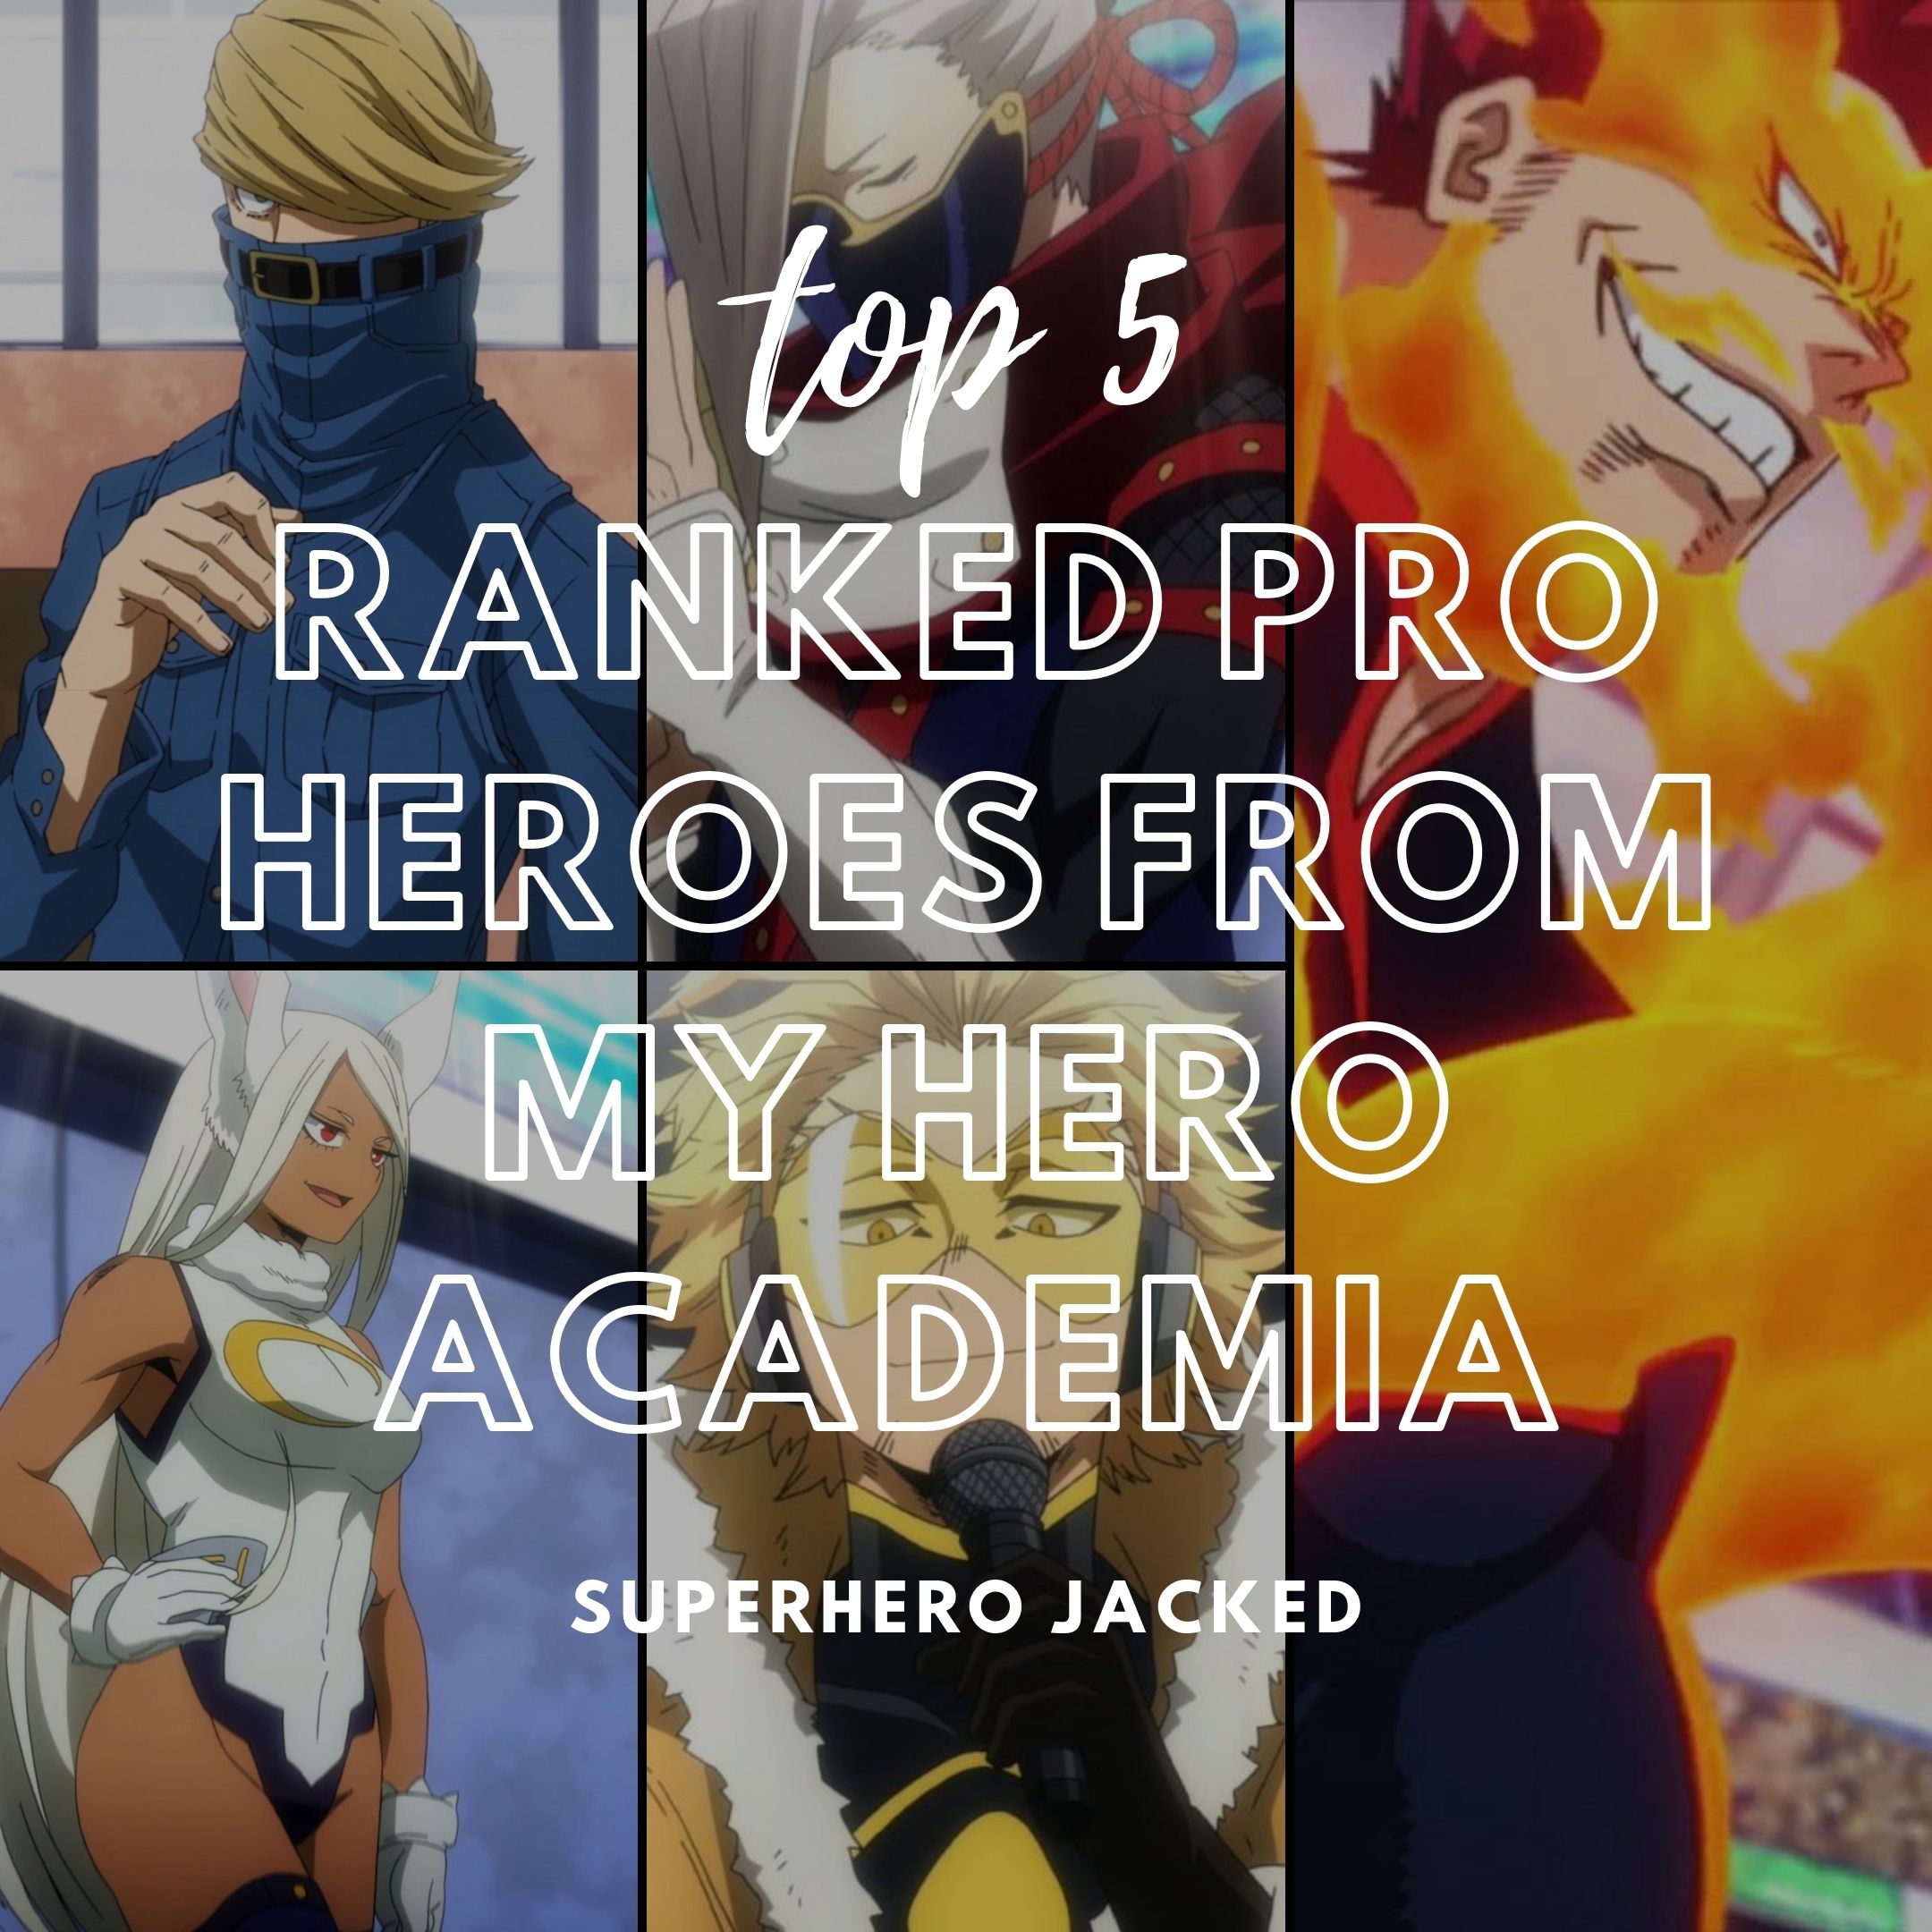 My Hero Academia: 10 Weakest Pro Heroes, Ranked